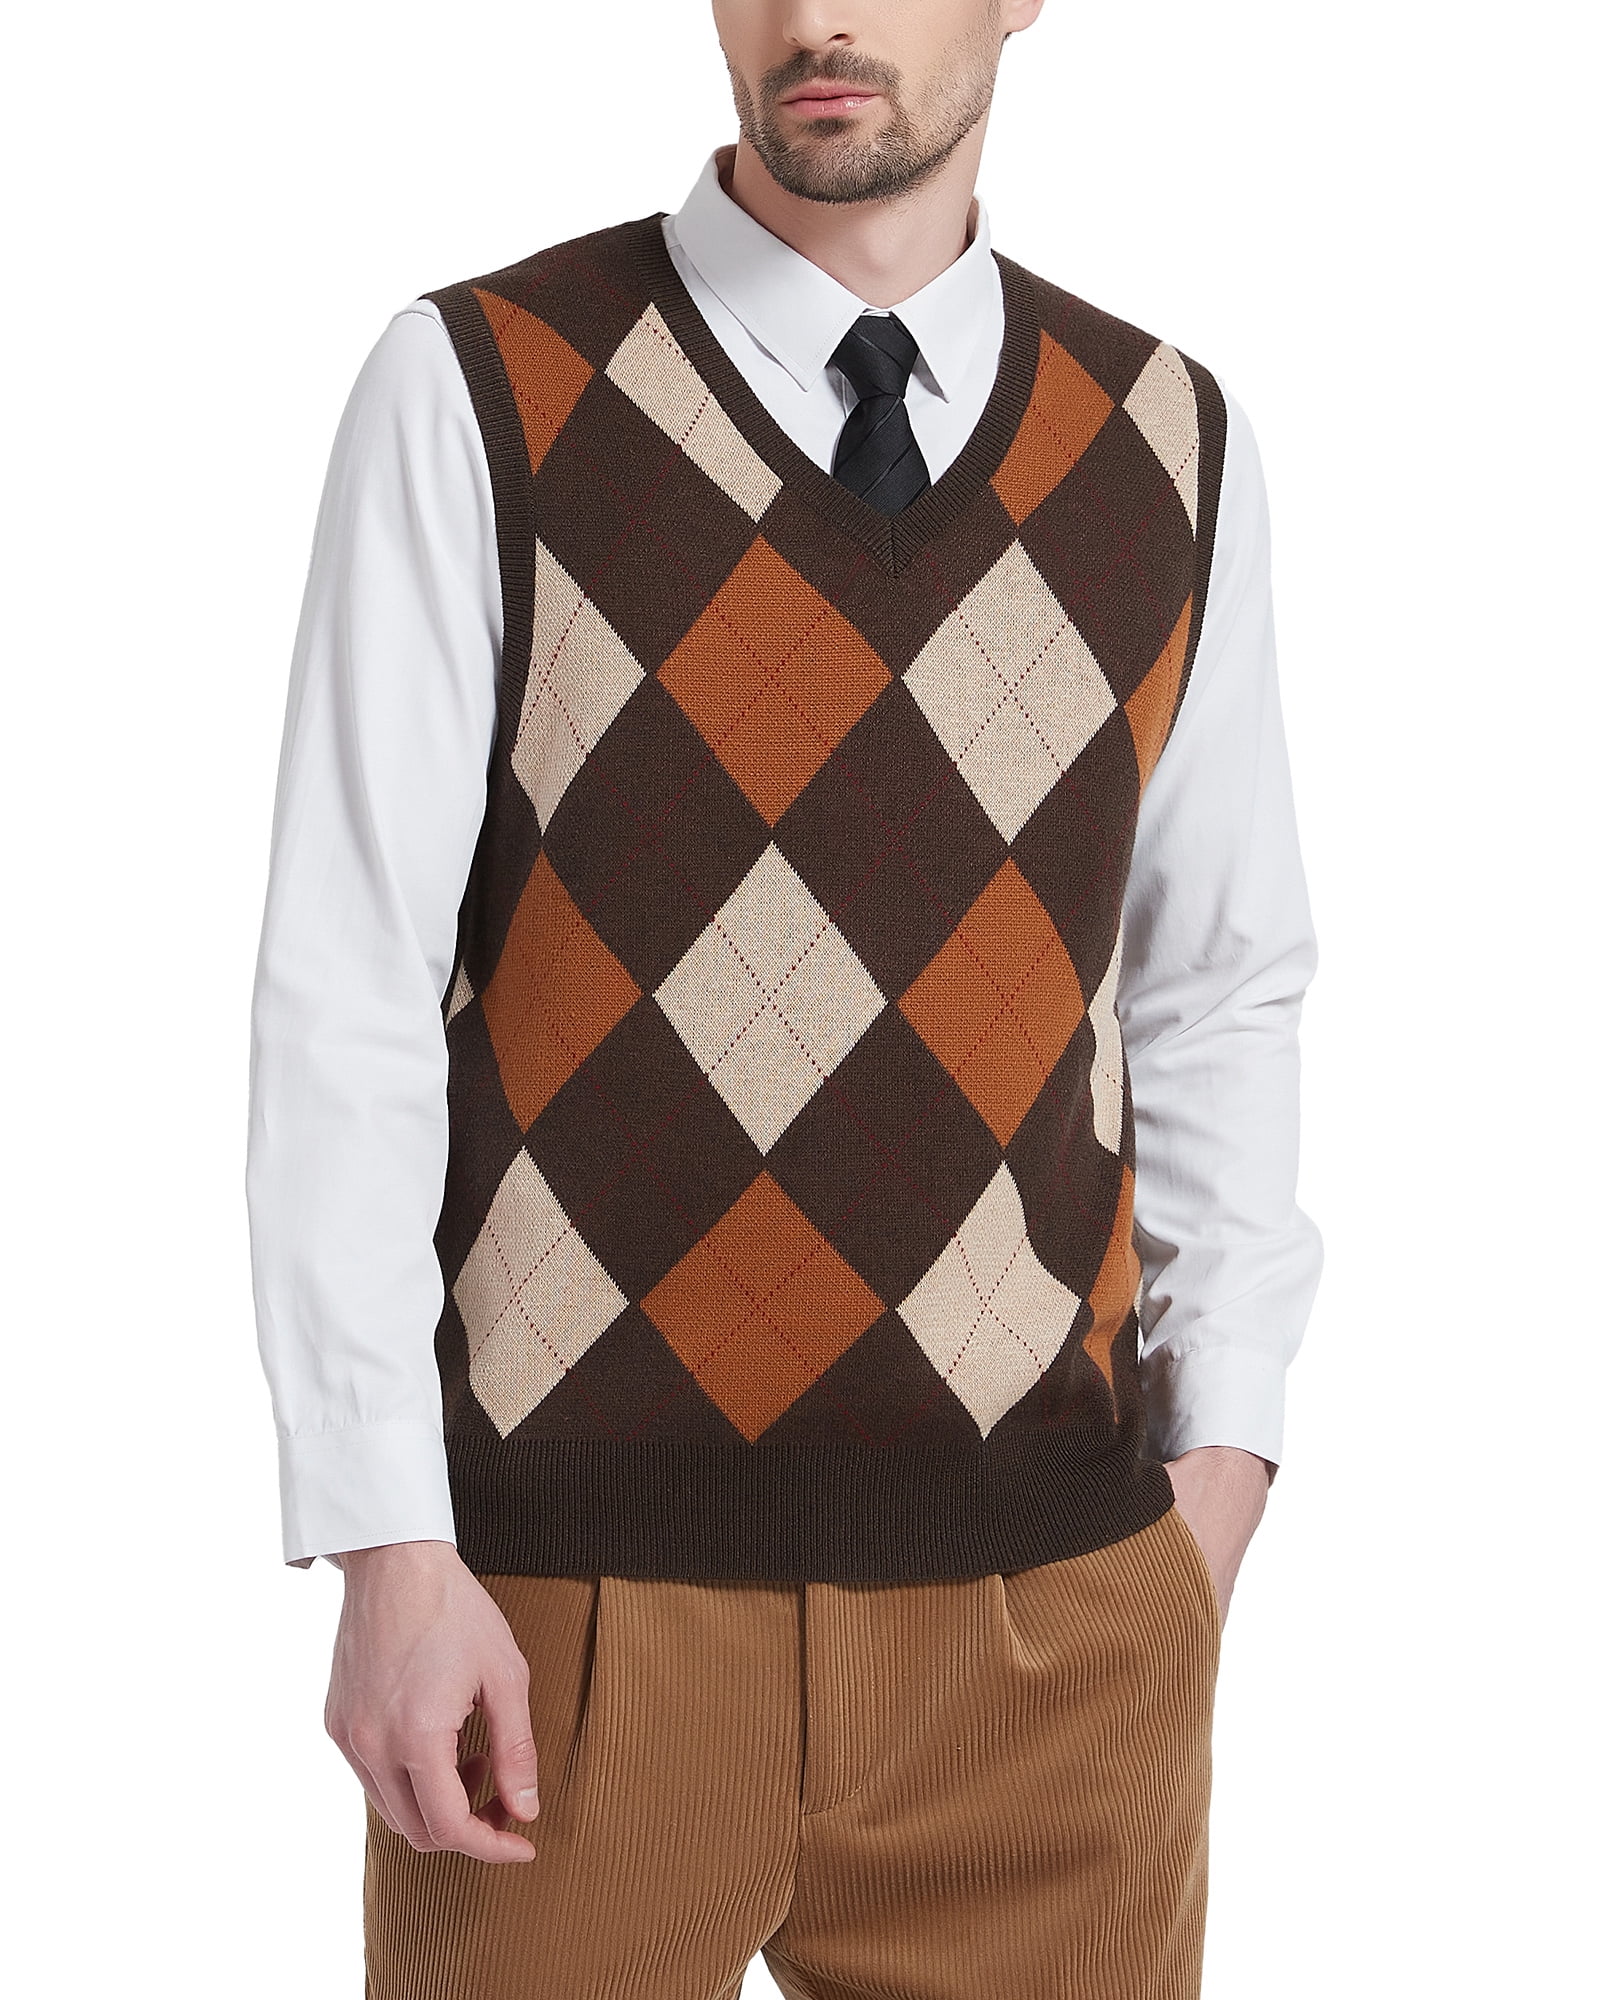 Kallspin Men's Argyle Vest Sweater Wool Blend V-Neck Sleeveless Pullover  Sweater(Brown,Large)